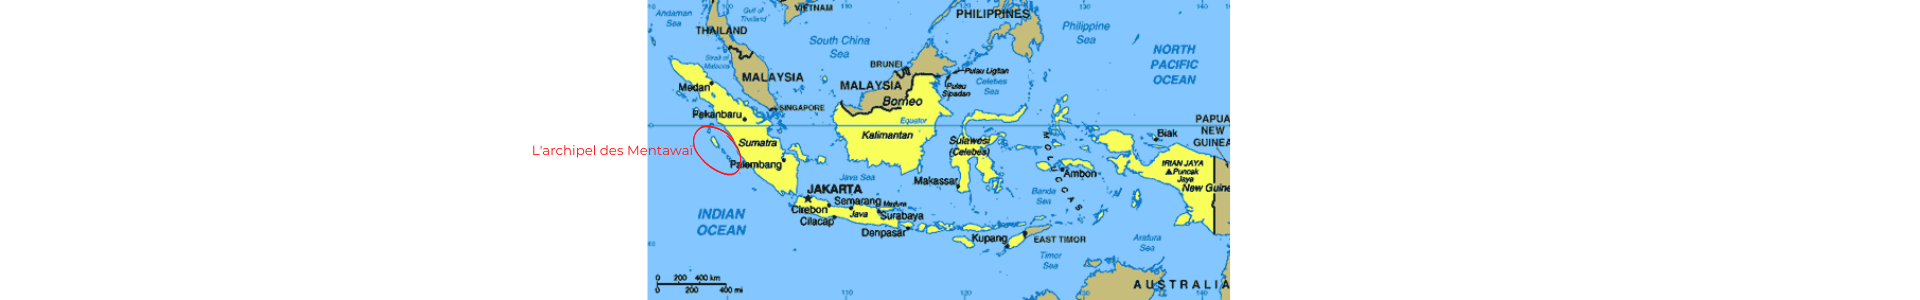 Situation géographique de l'archipel des Mentawaï